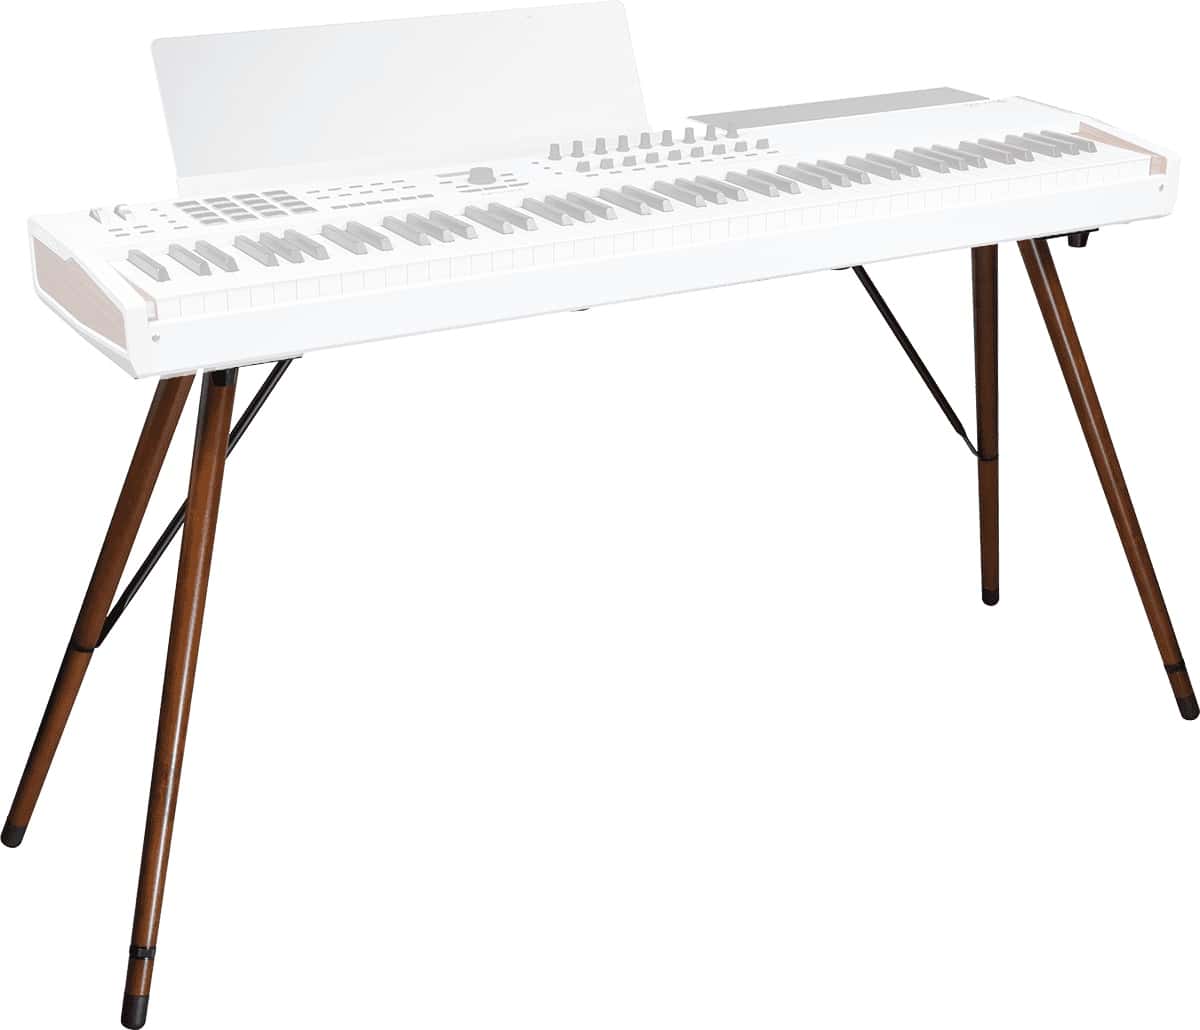 Quel est le meilleur stand pour un clavier, un piano ou un synthé ?